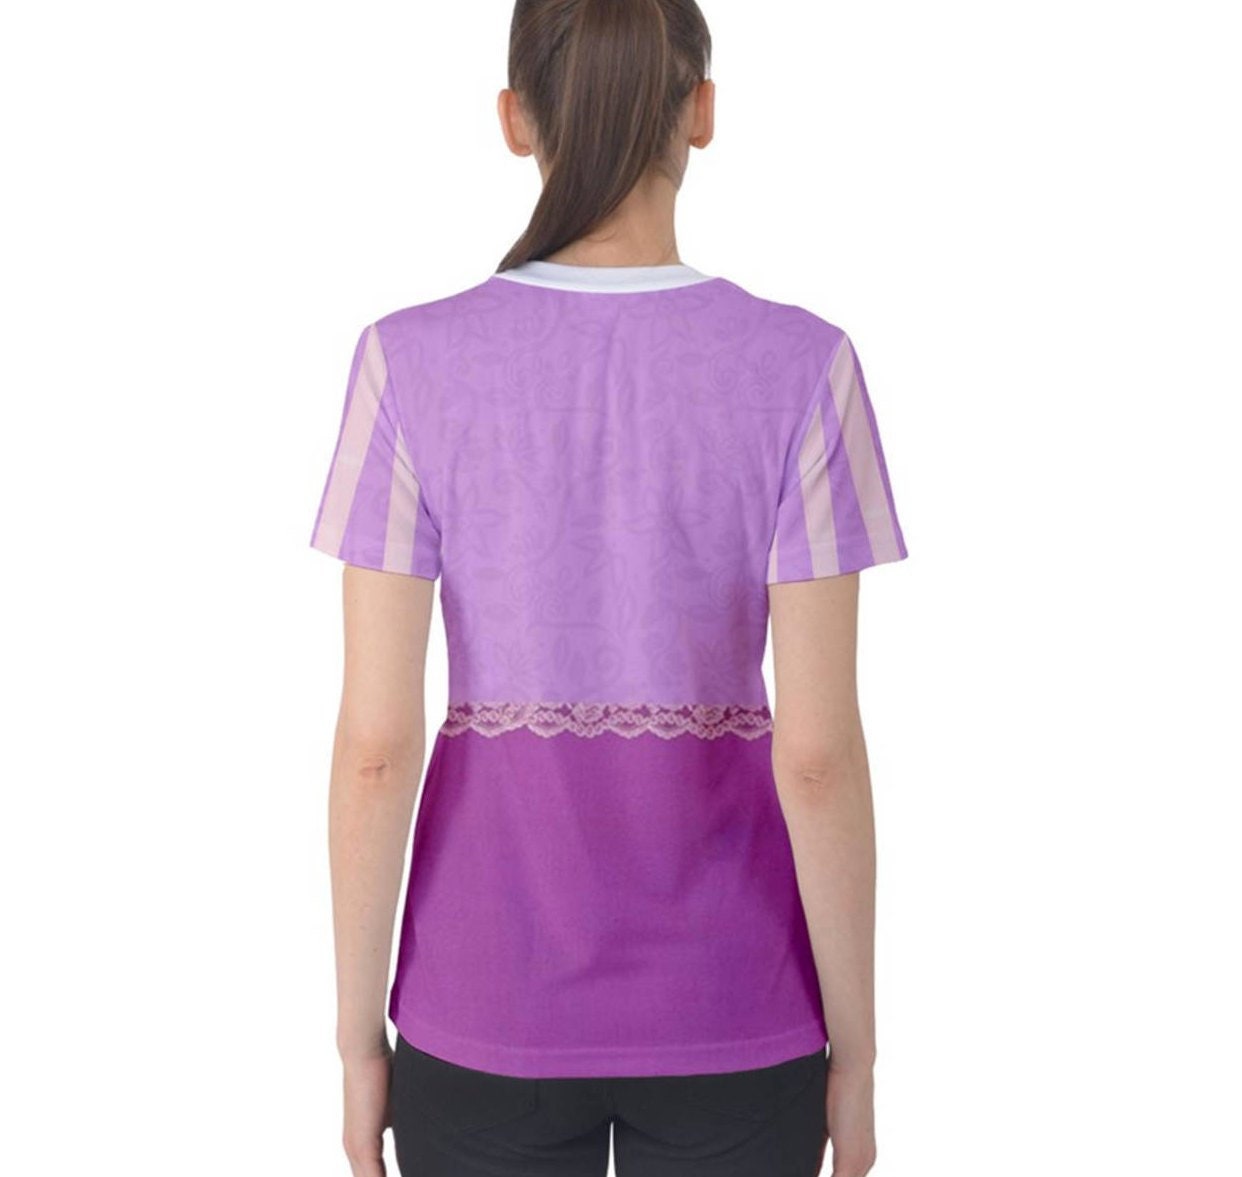 RUSH ORDER: Women's Rapunzel Tangled Inspired ATHLETIC Shirt